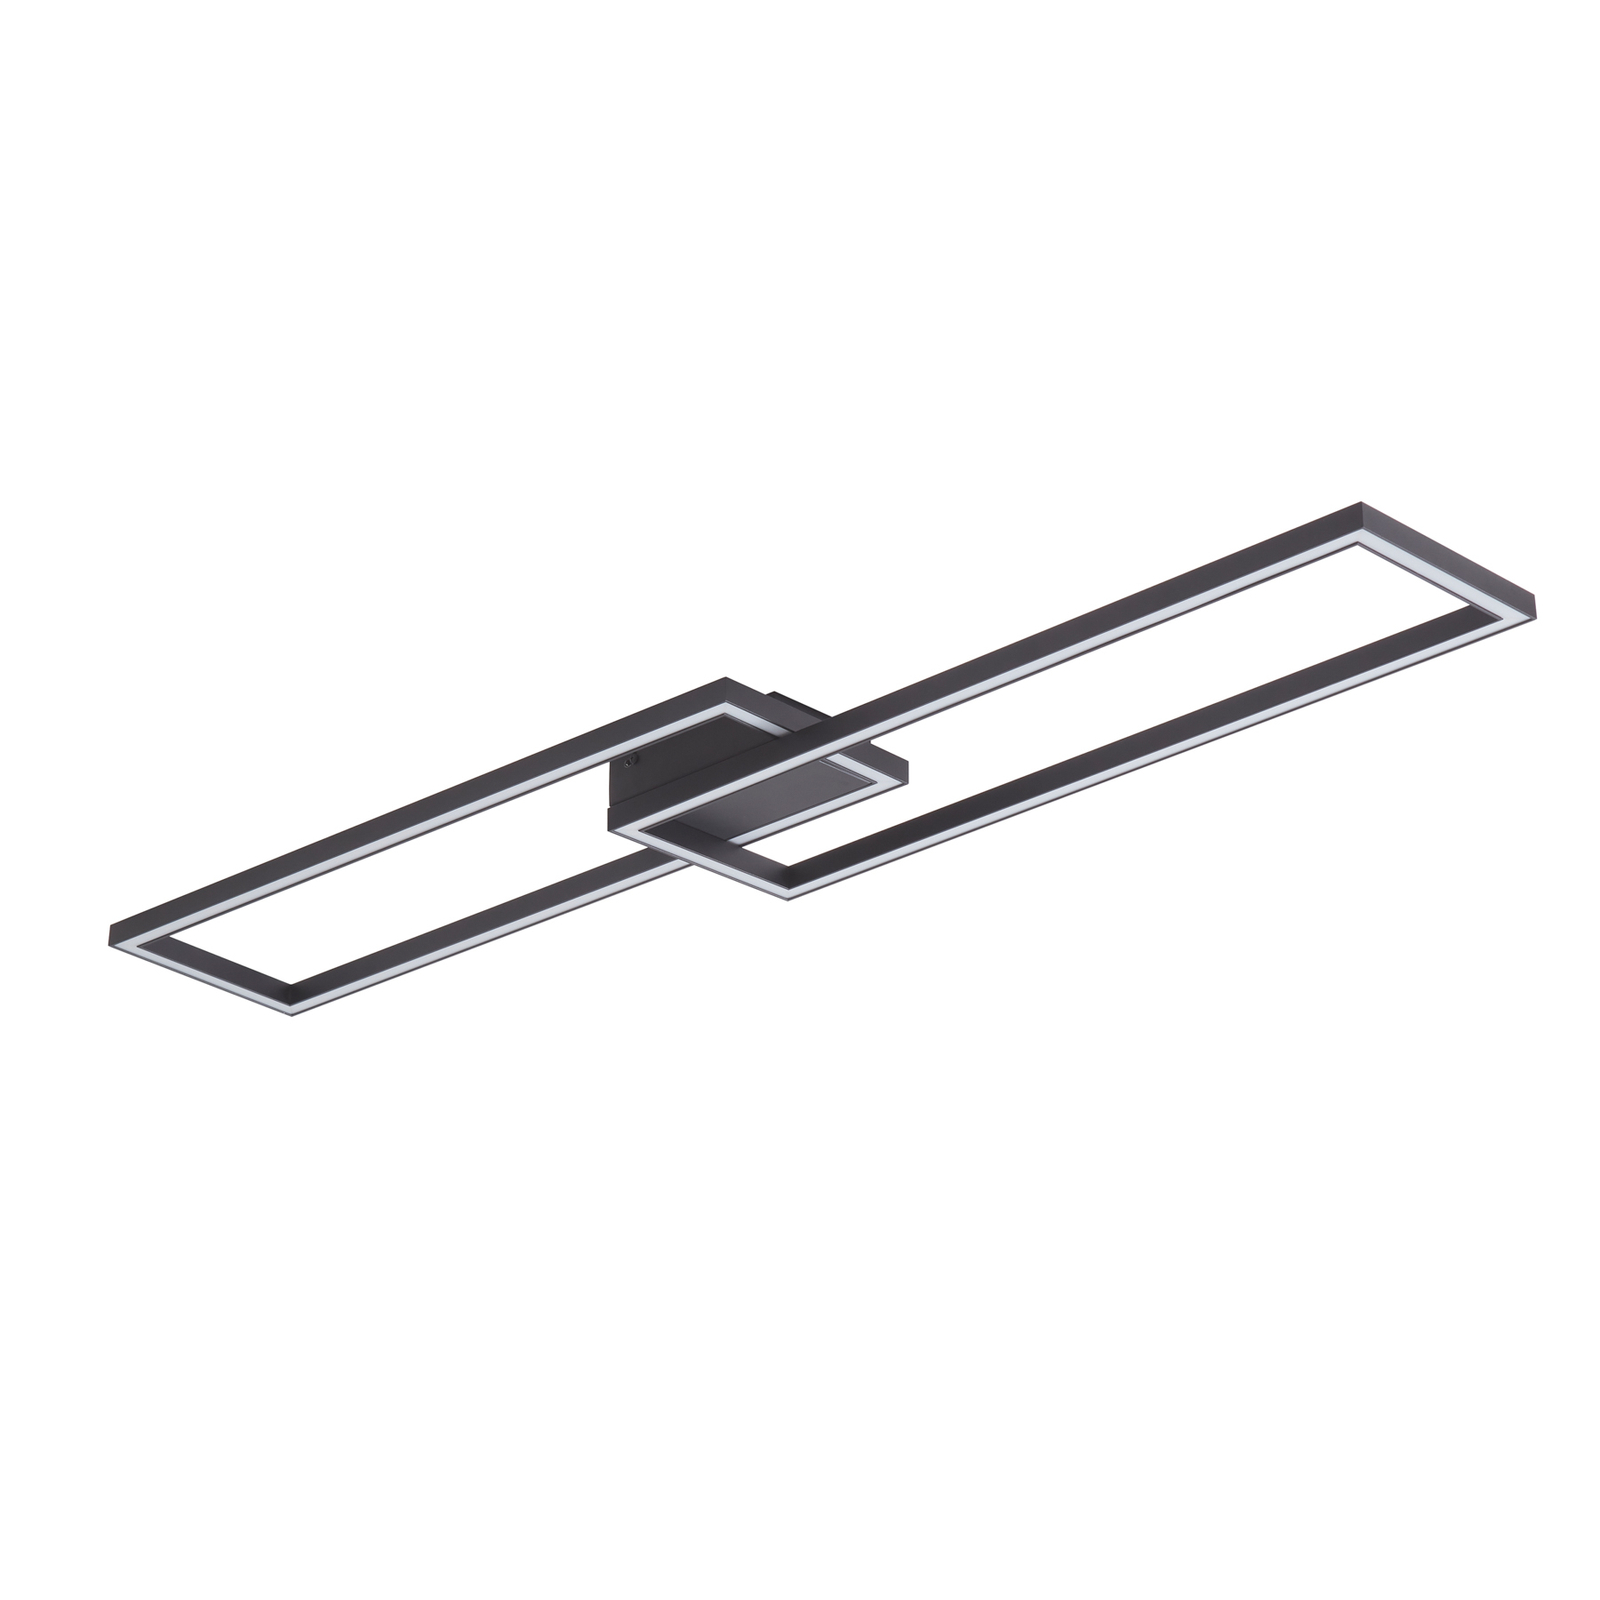 Lucande Plafonnier LED Tjado, 120 cm de long, noir, métal